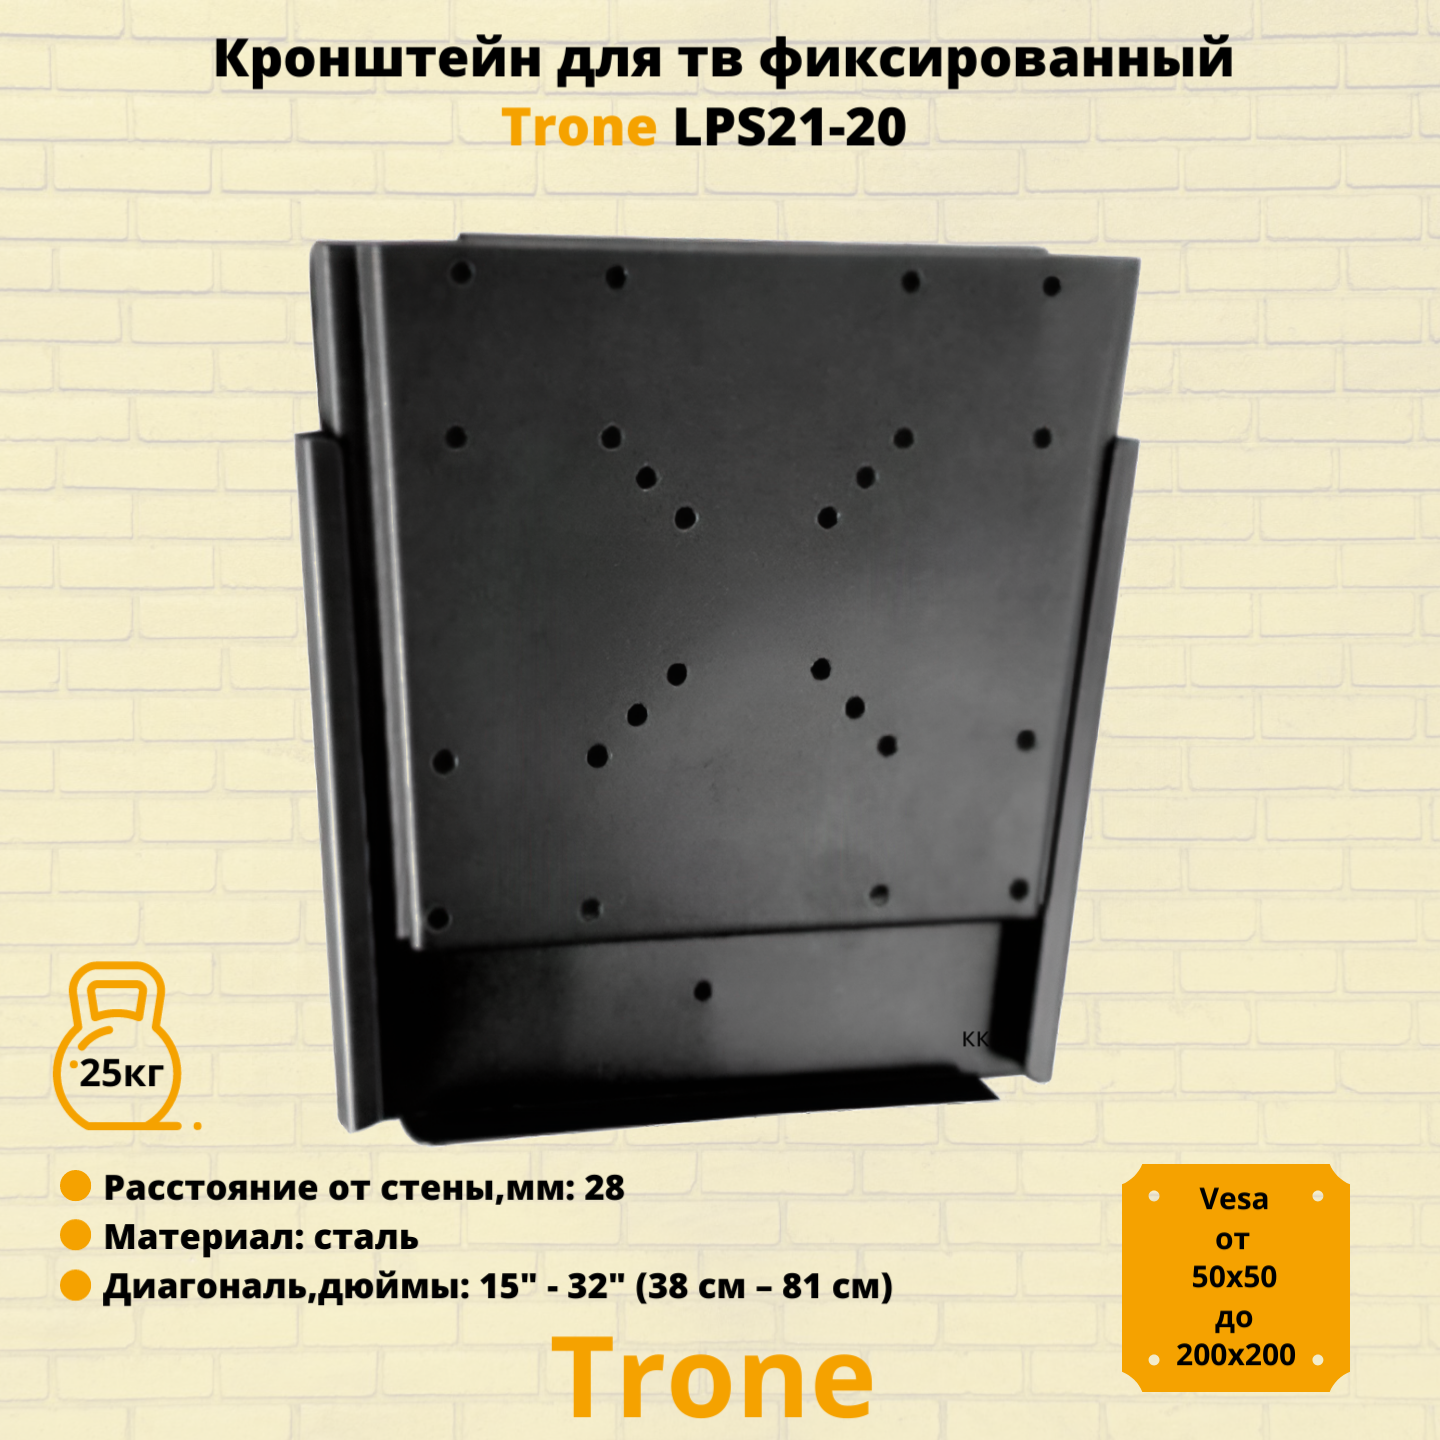 Кронштейн для телевизора на стену фиксированный с диагональю 15"-32" Trone LPS 21-20, черный